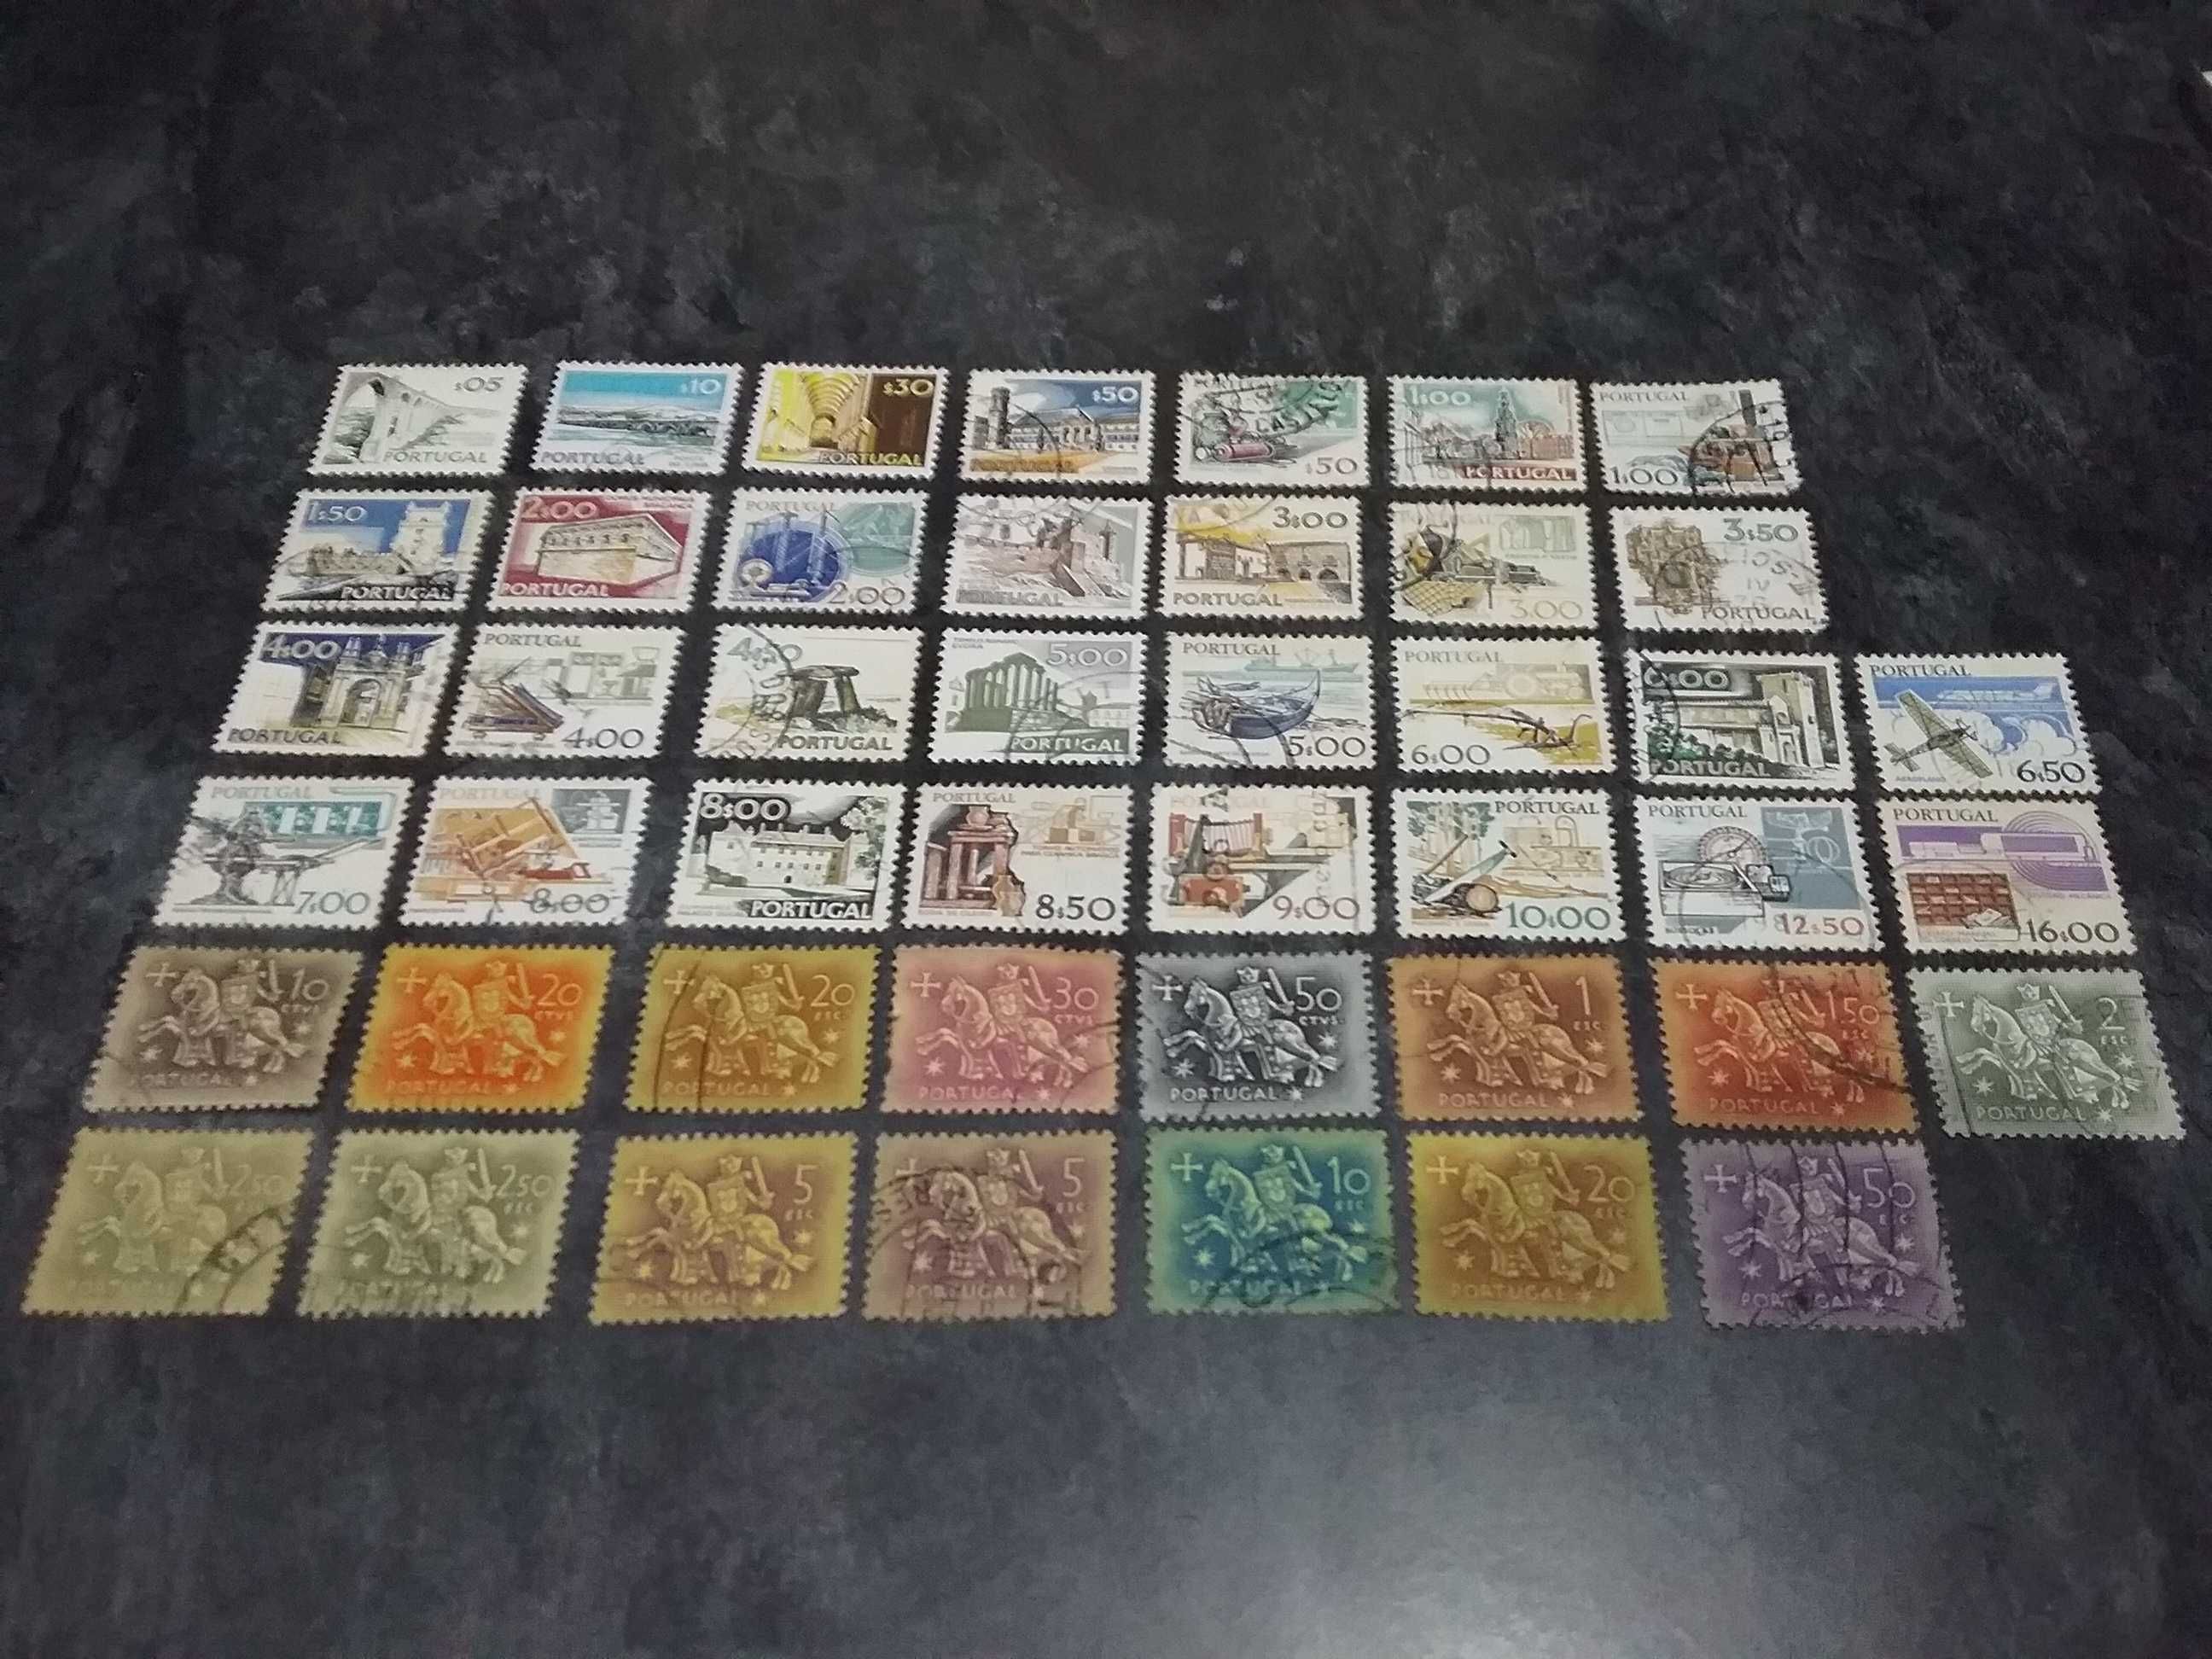 Conj. de selos de Portugal antigos e recentes, cada conj. 3,00€.